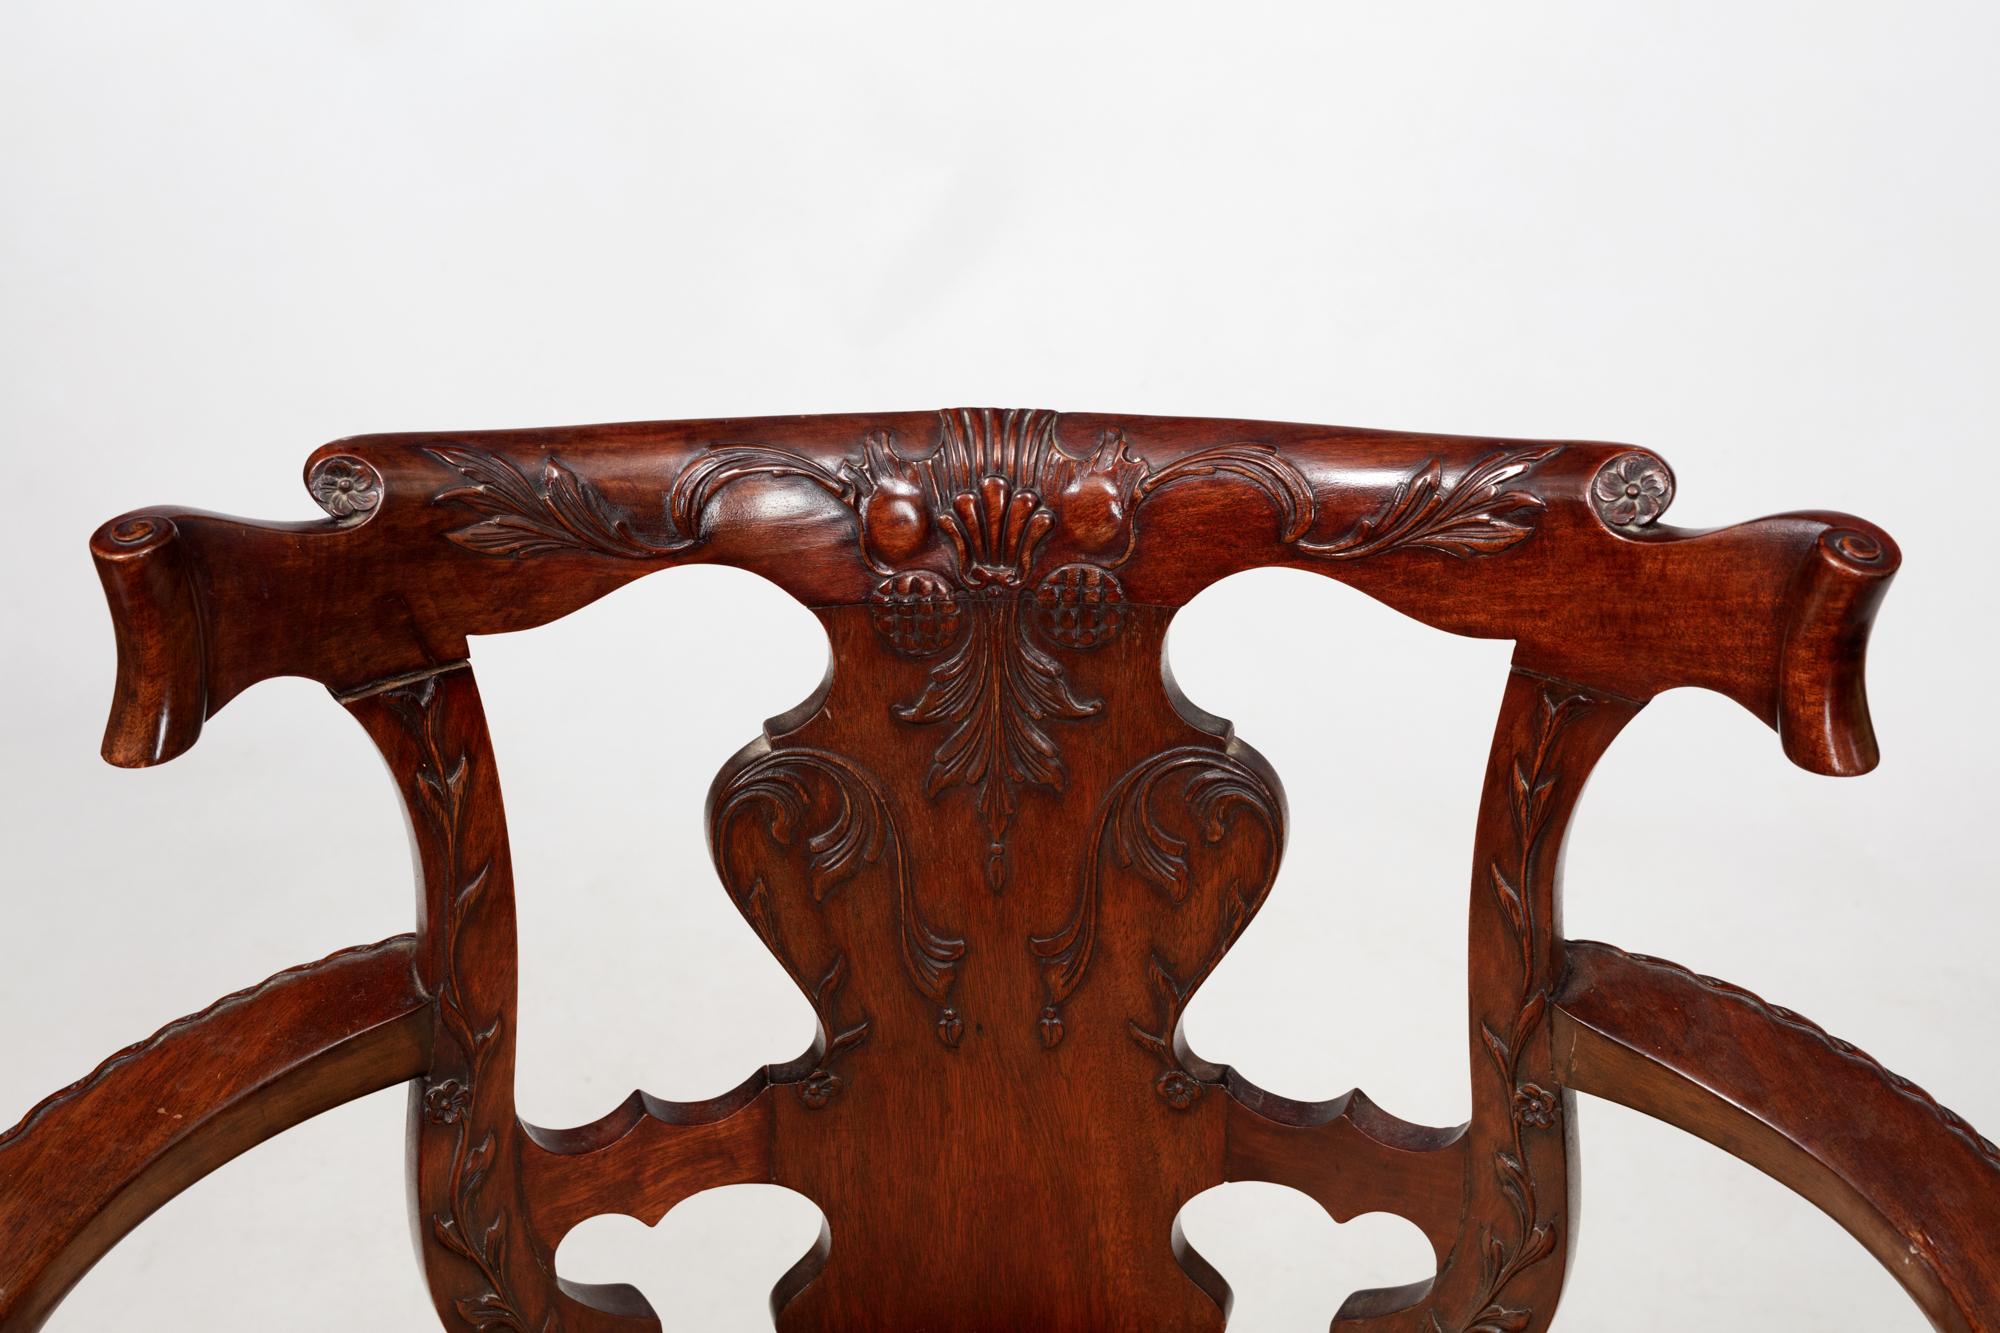 Offener Sessel aus irischem Mahagoni des 19. Jahrhunderts. Dieser Schreibtischstuhl im georgianischen Stil mit massivem, geschnitztem Sims und oberer Schiene, ausgebreiteten Armlehnen, ovaler Sitzfläche und Sitzschiene mit Jakobsmuschel, steht auf